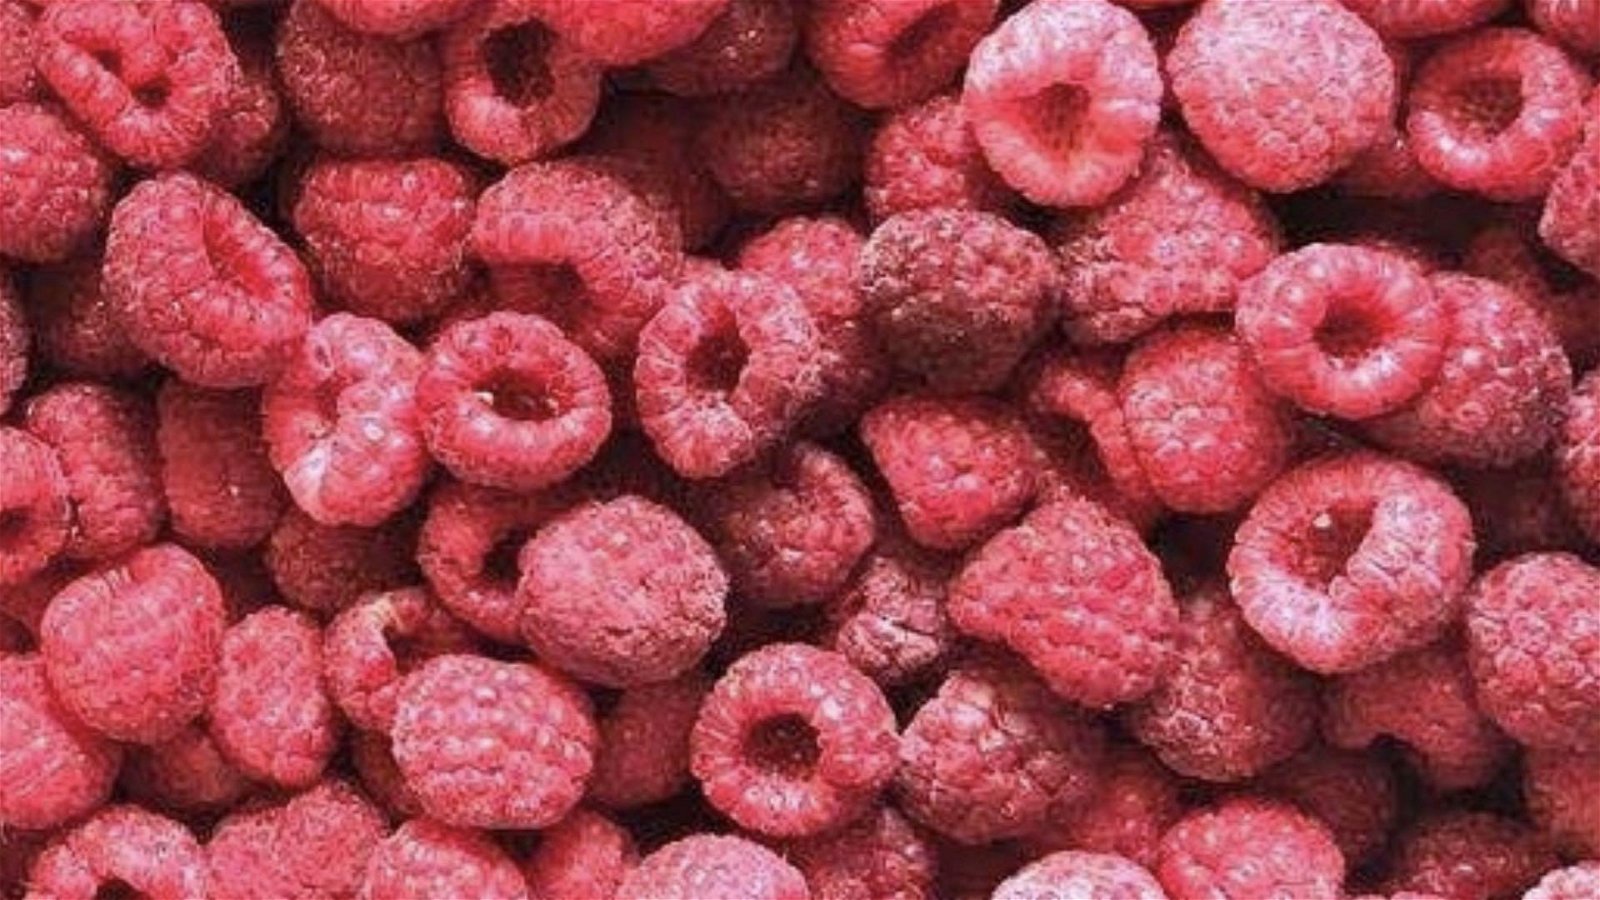 冷冻树莓,速冻树莓 3